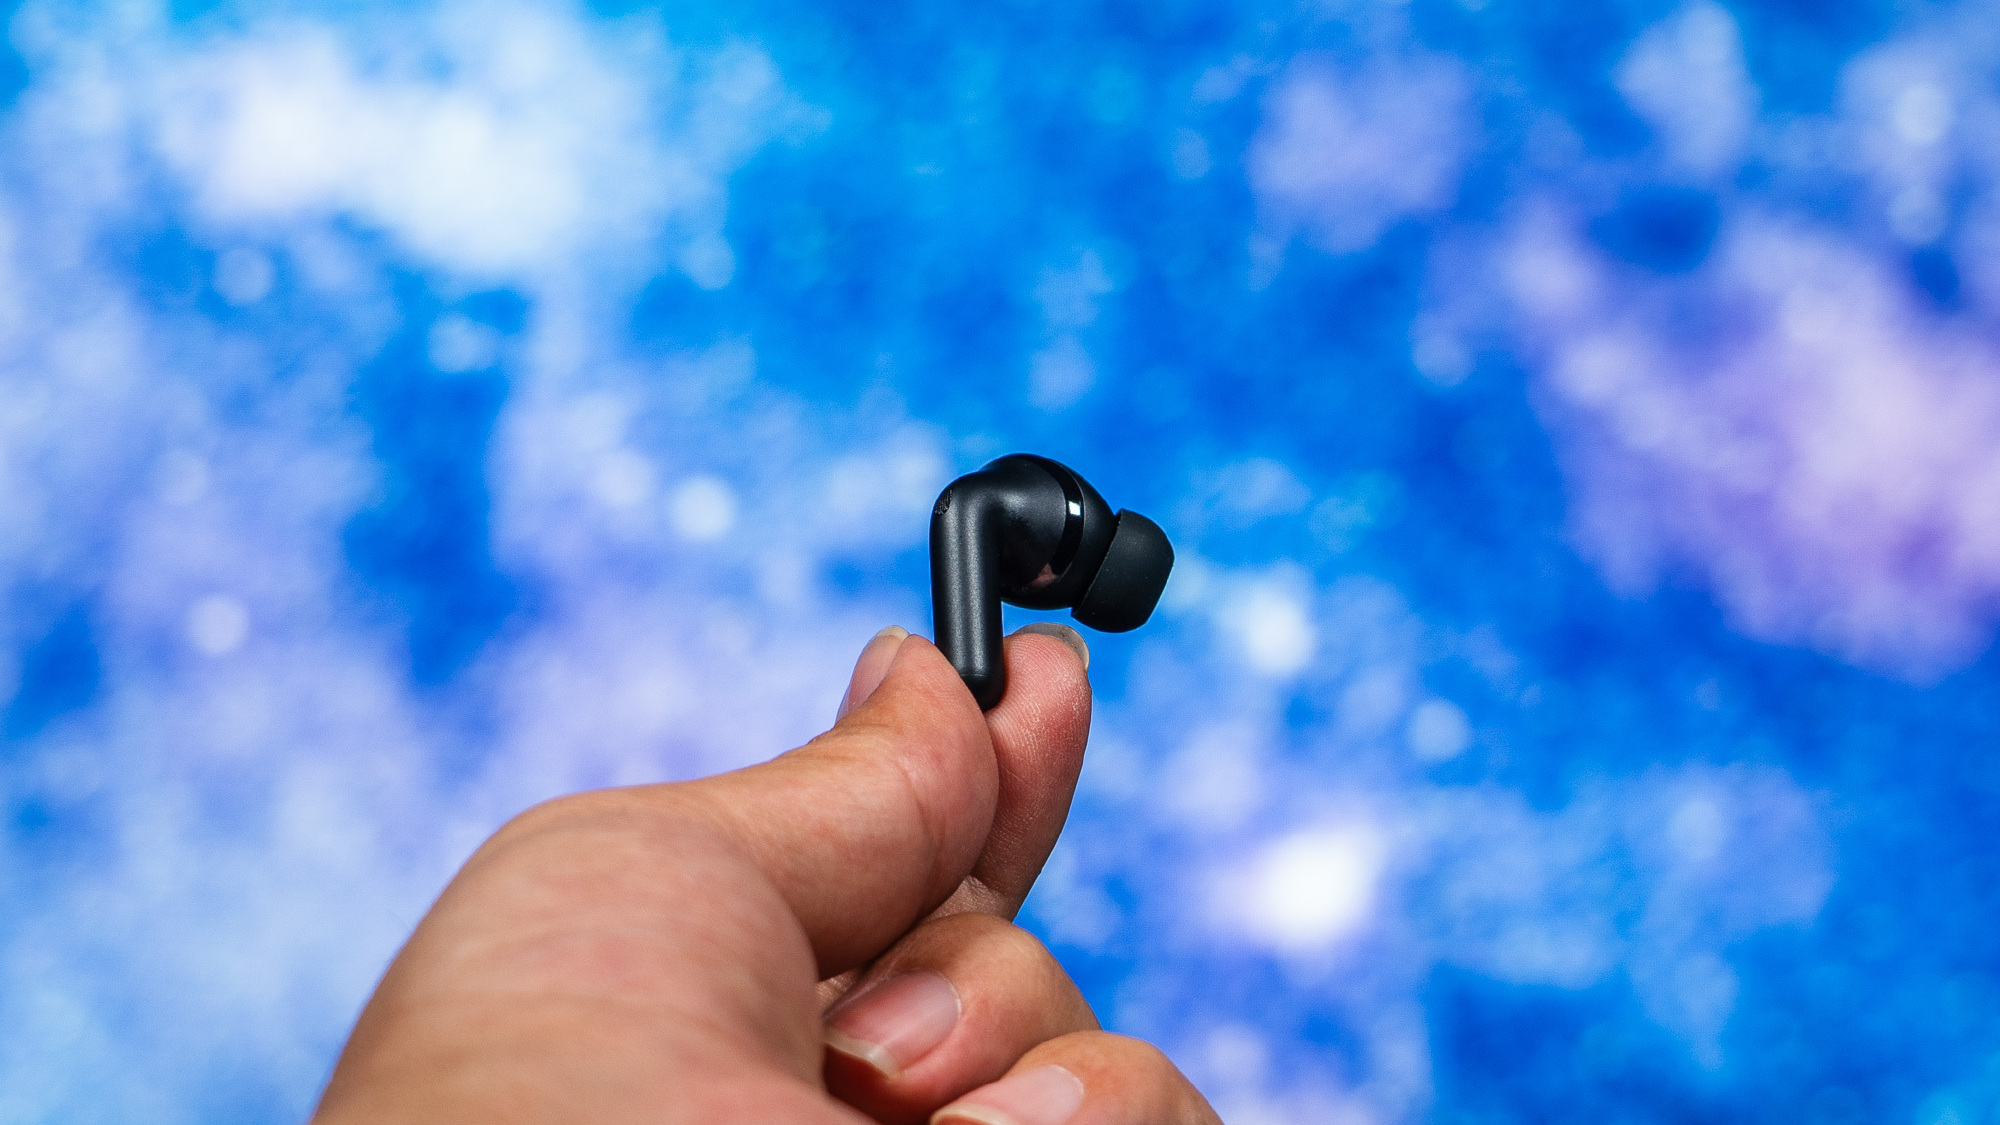 Ra mắt tai nghe TWS có chống ồn chủ động, chất âm cao cấp, pin 9 giờ, giá từ 1 triệu đồng- Ảnh 3.